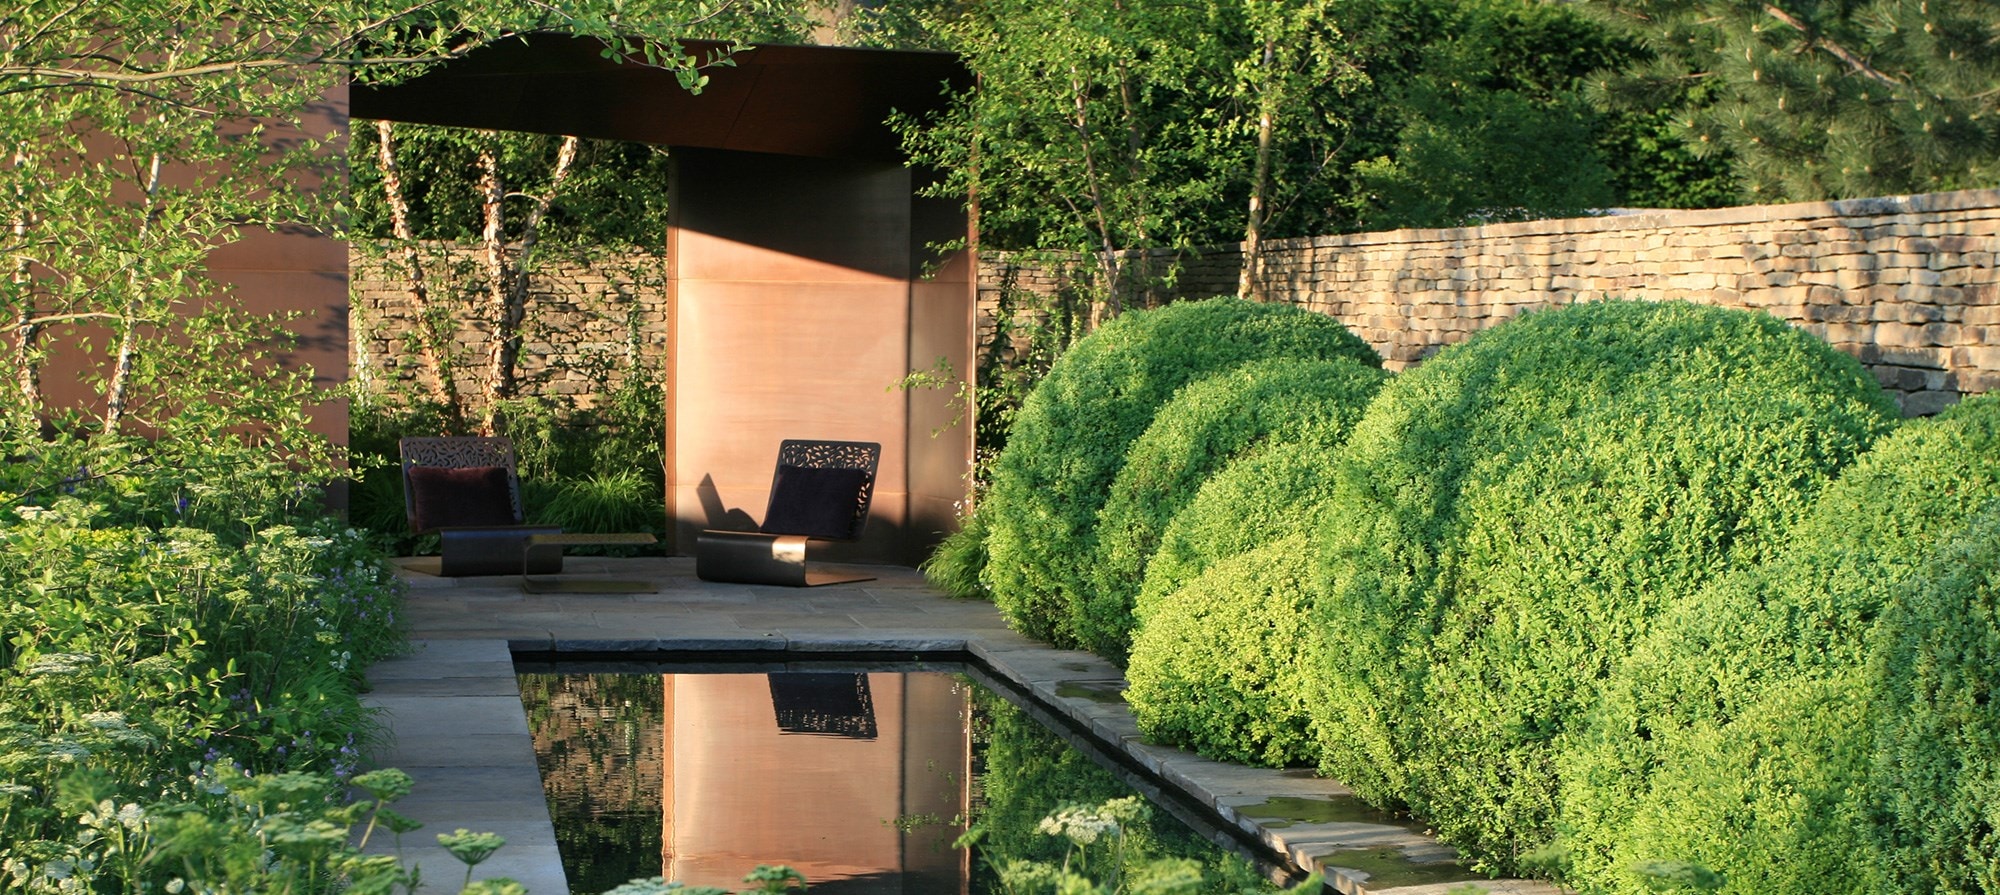 The Laurent-Perrier Garden designed by Tom Stuart-Smith